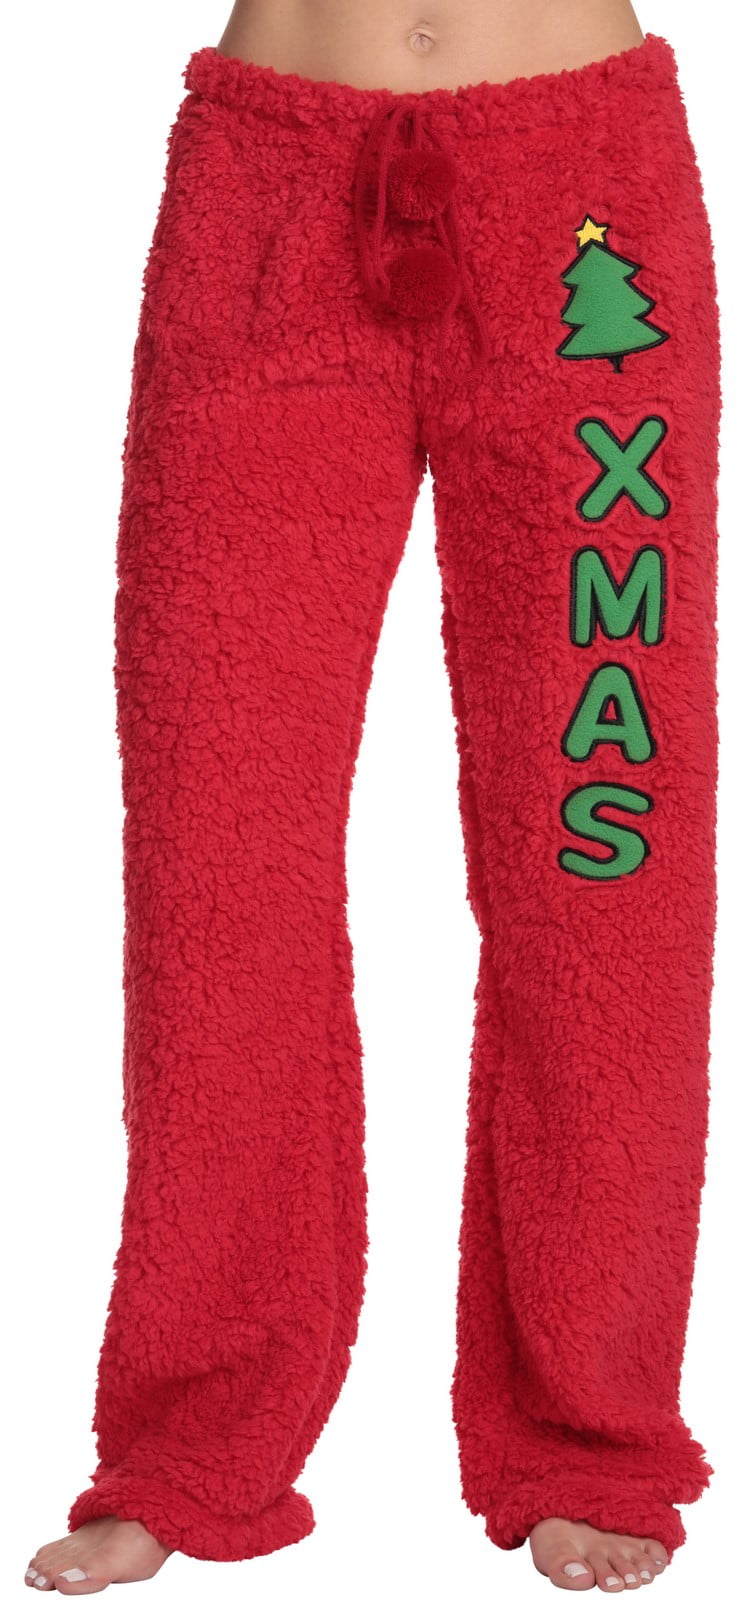 Womens Ladies Plush Fleece PJ Pajama Pants 80140P, Navy Red Plaid